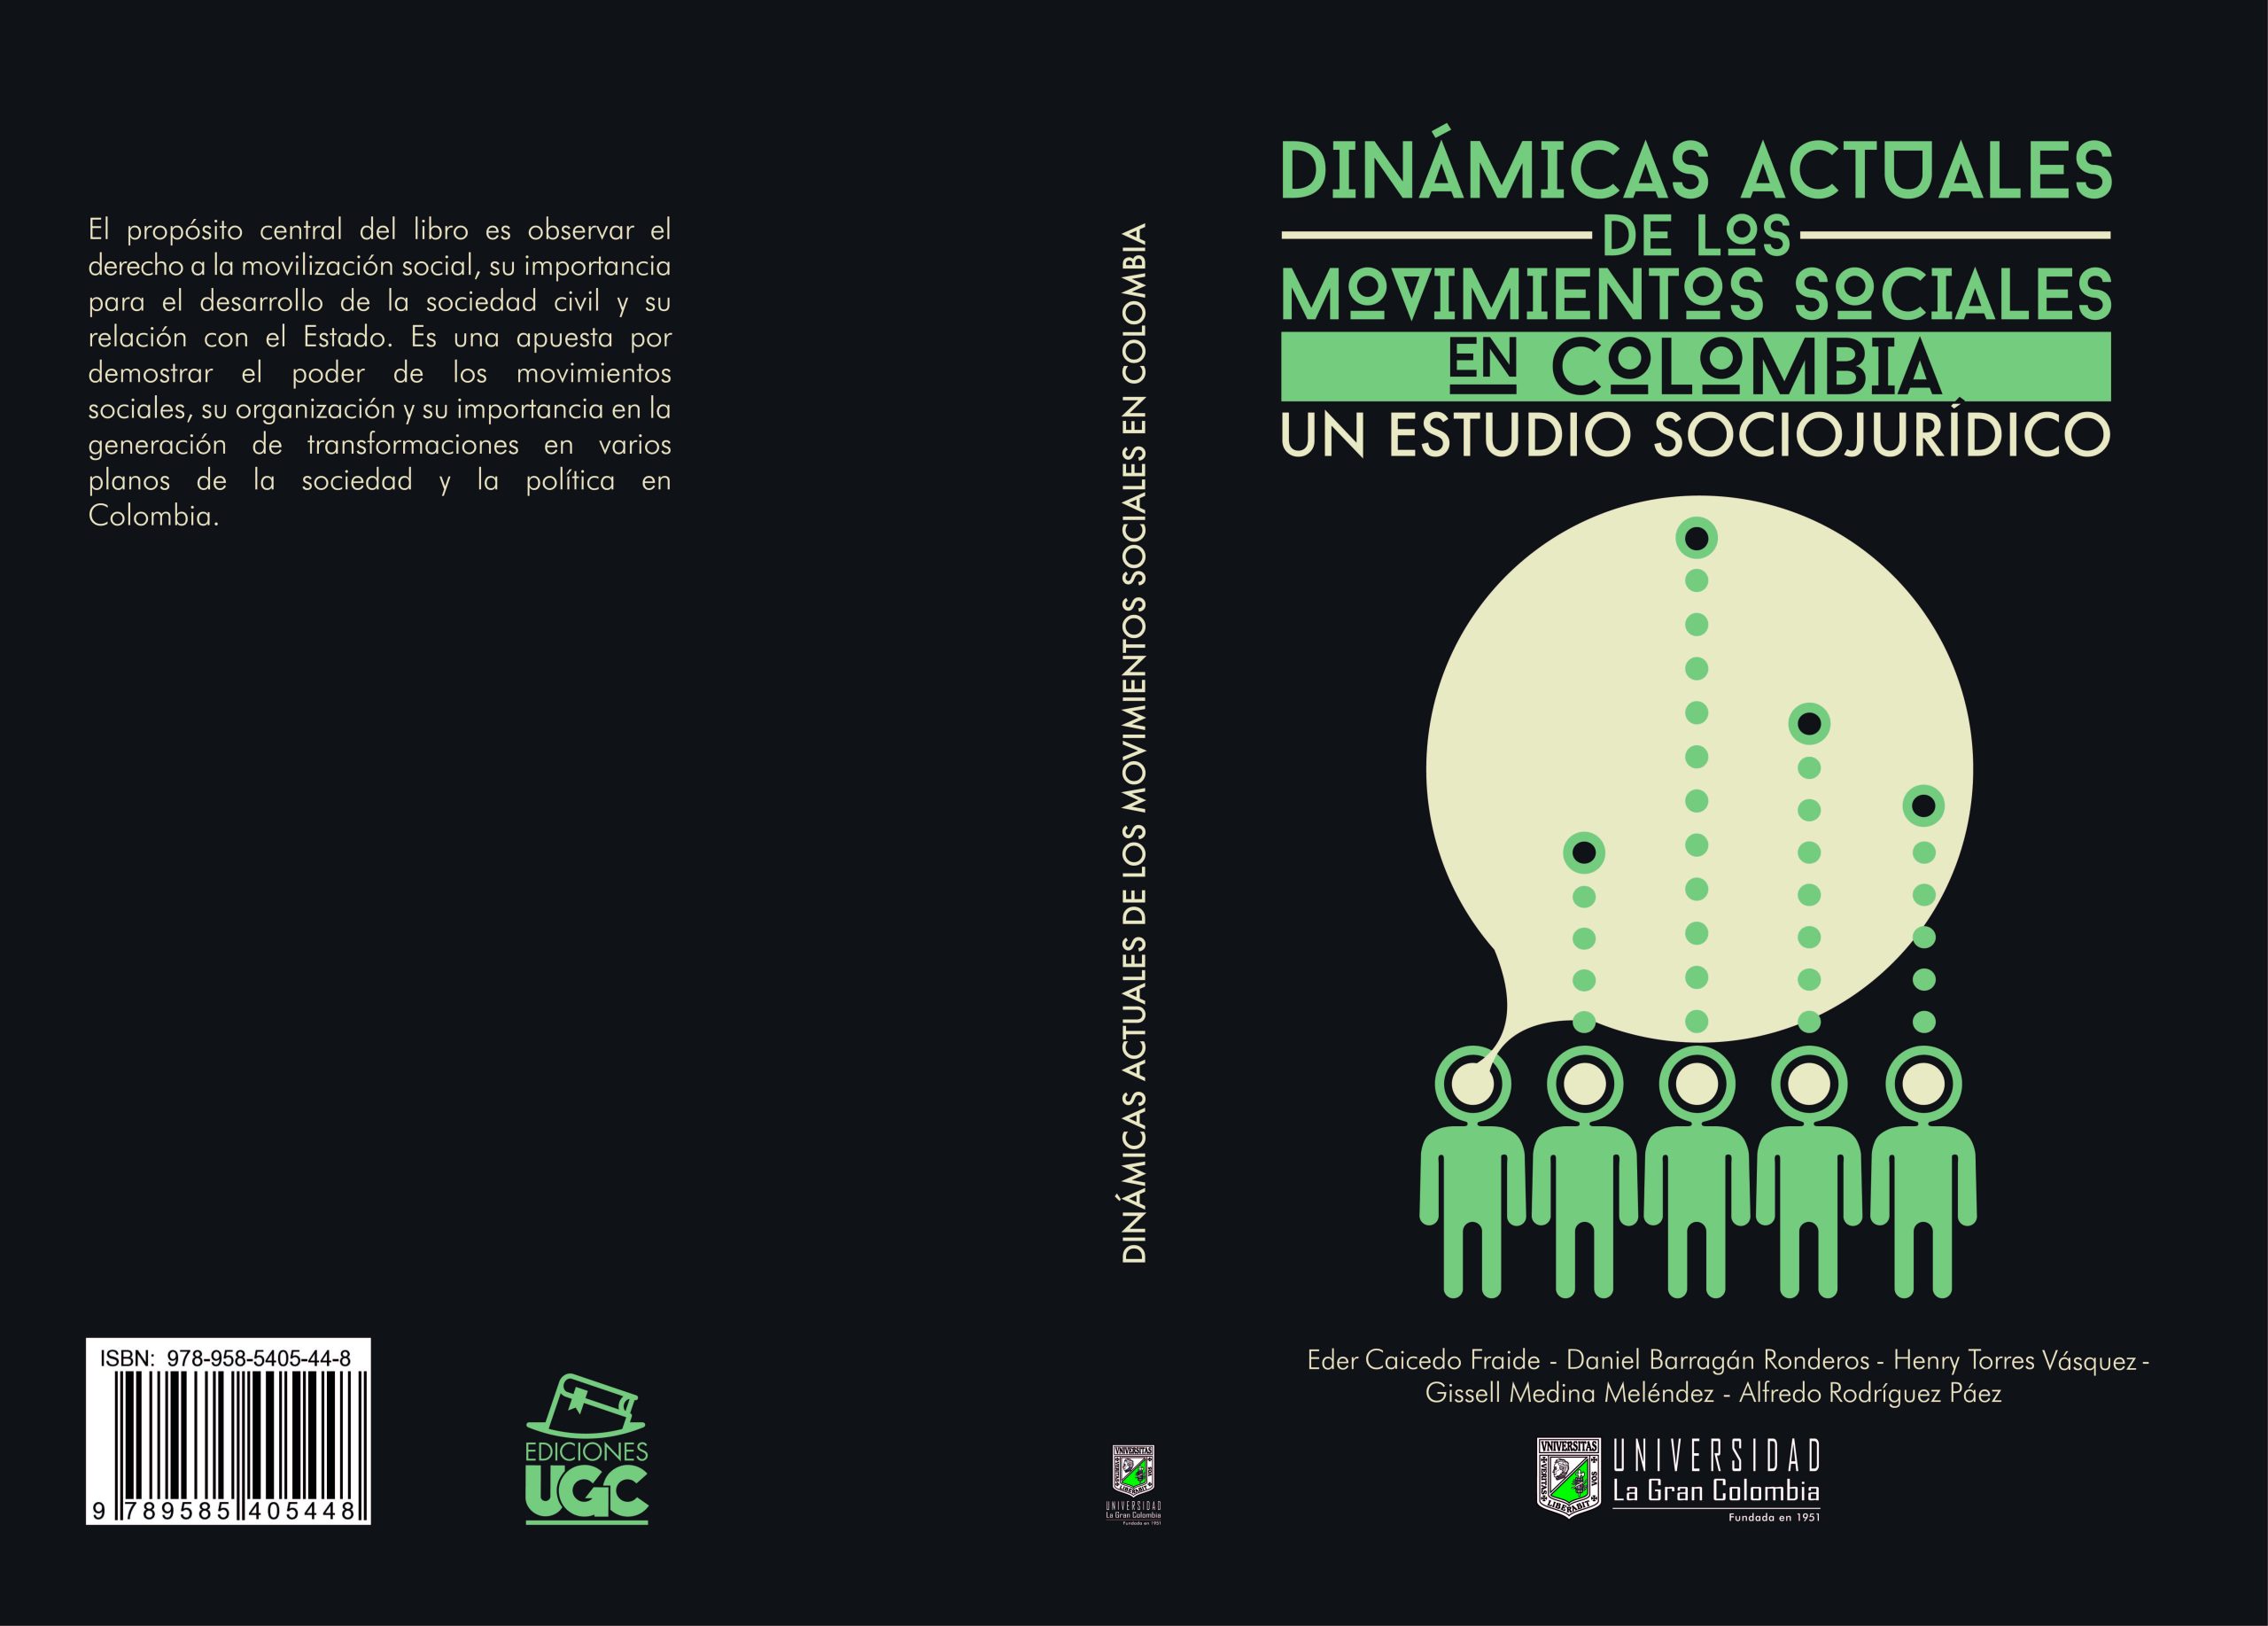 Dinamicas actuales de los movimientos sociales en colombia